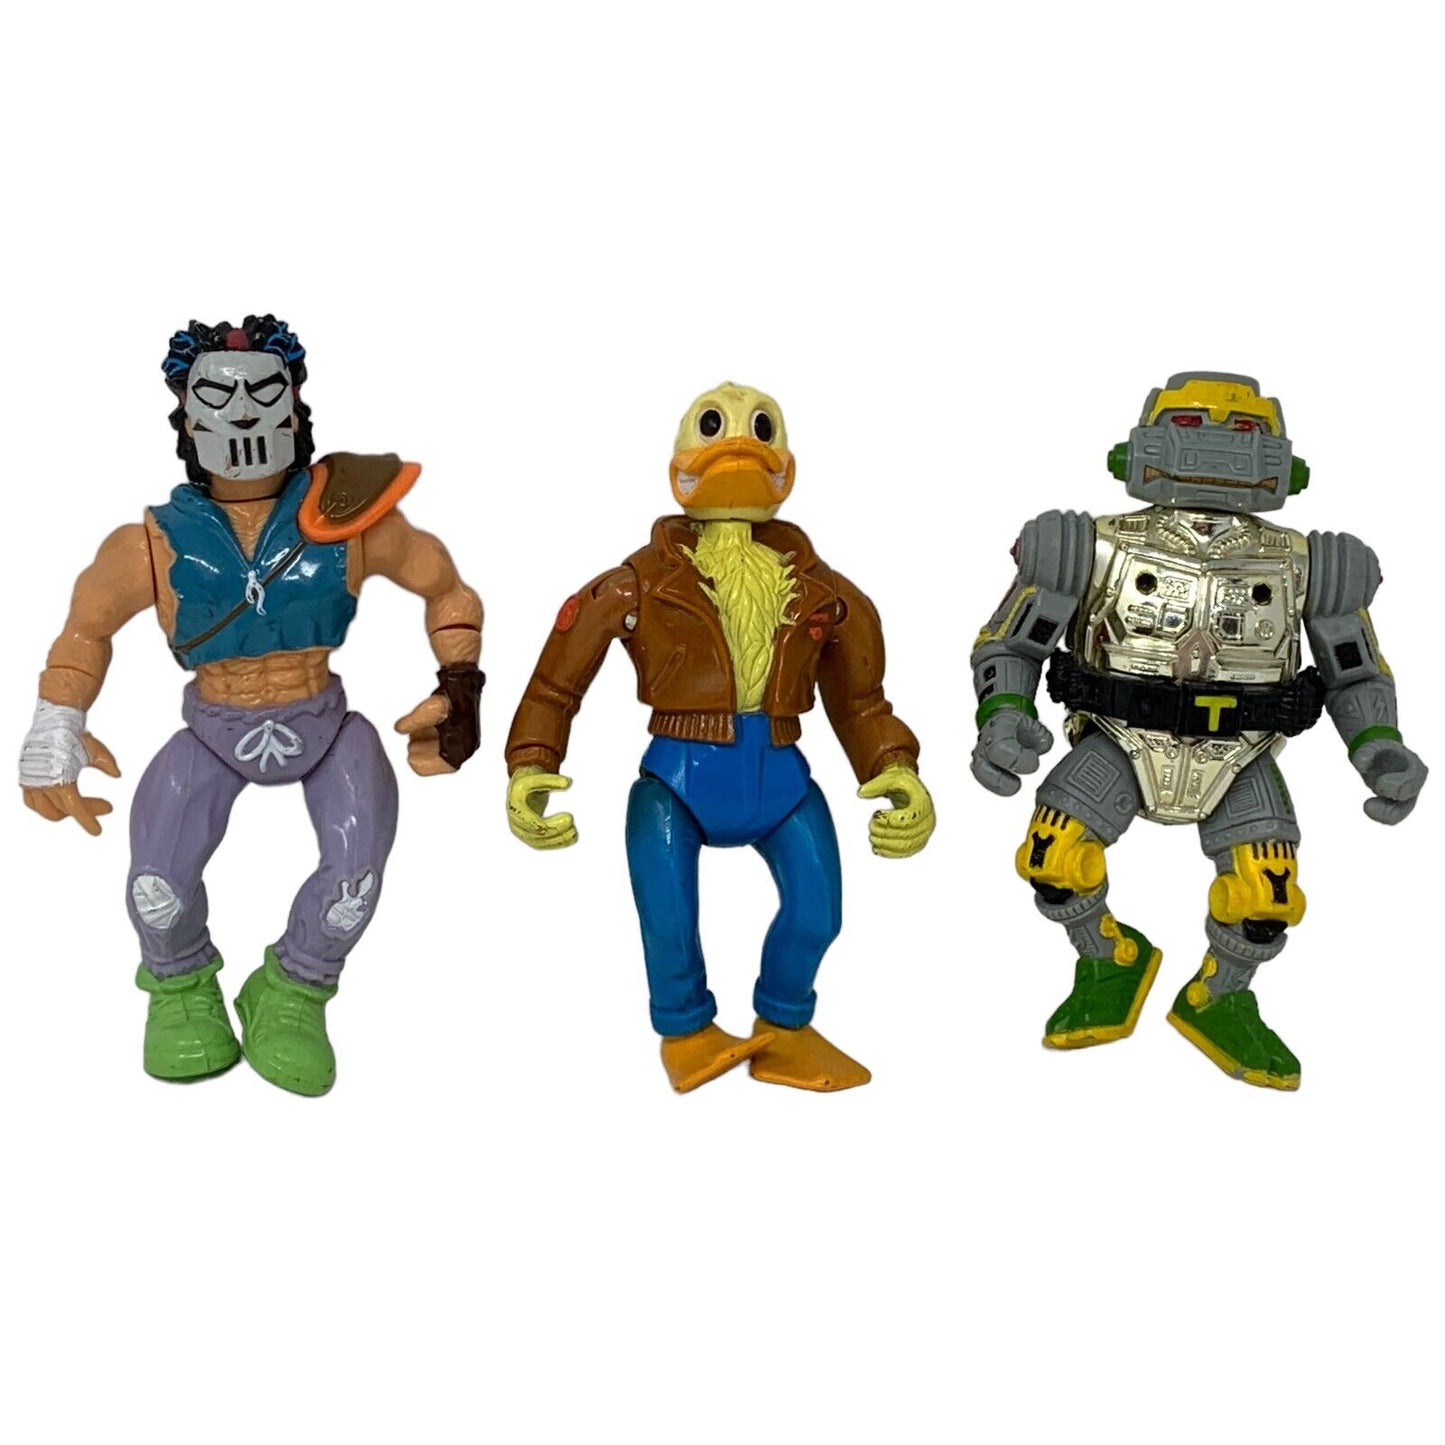 Lot of 9 Vintage 80s TMNT Action Figures Vehicles Teenage Mutant Ninja Turtles